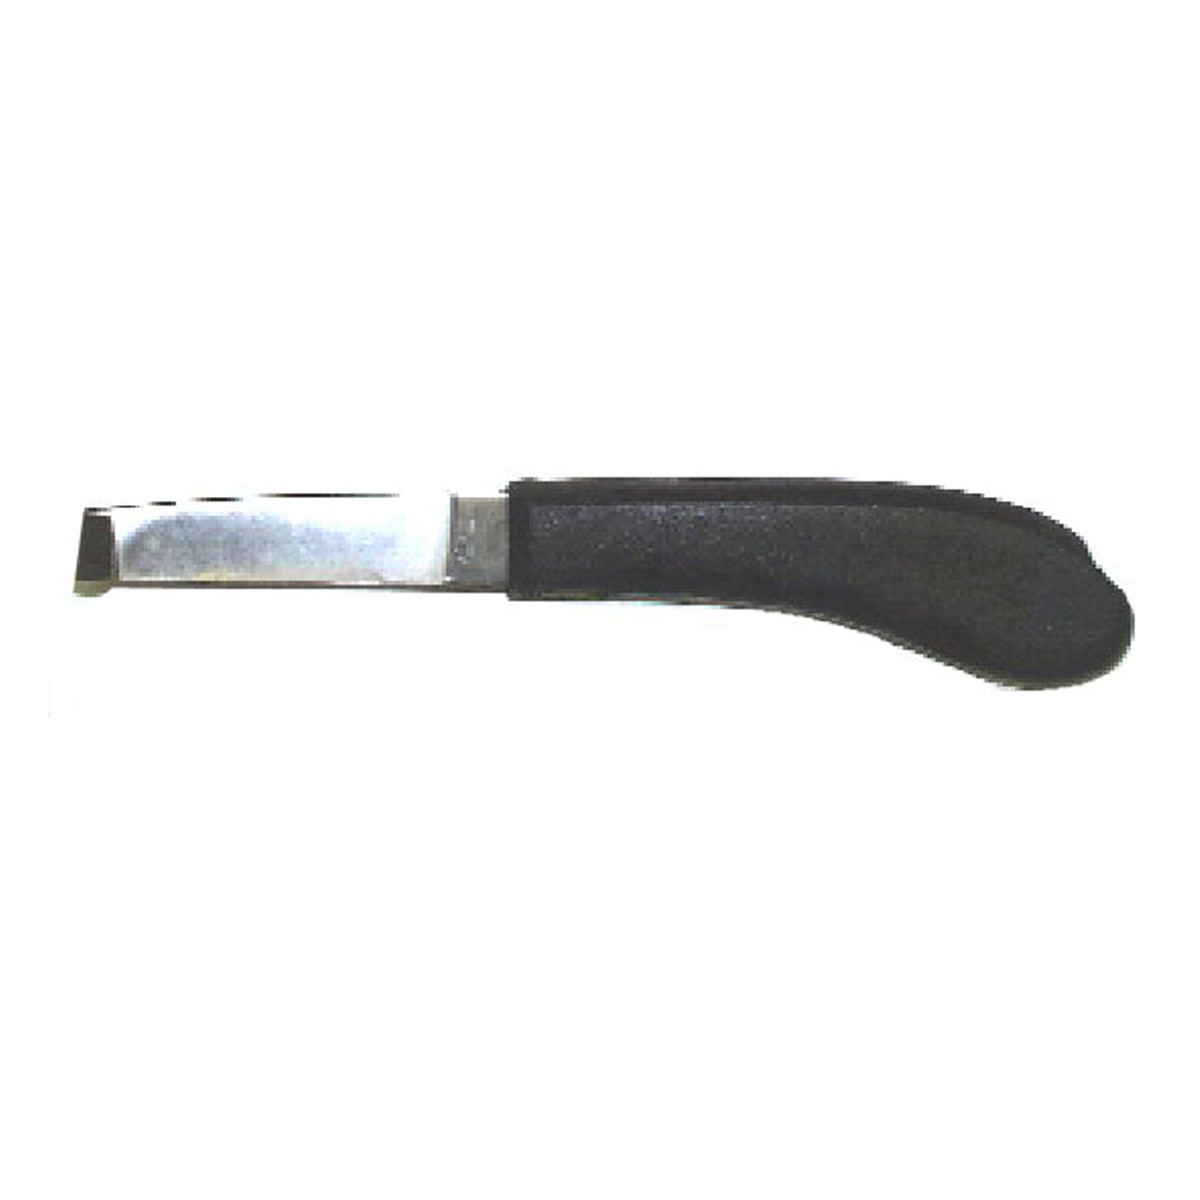 Hoof Knife - Left hand